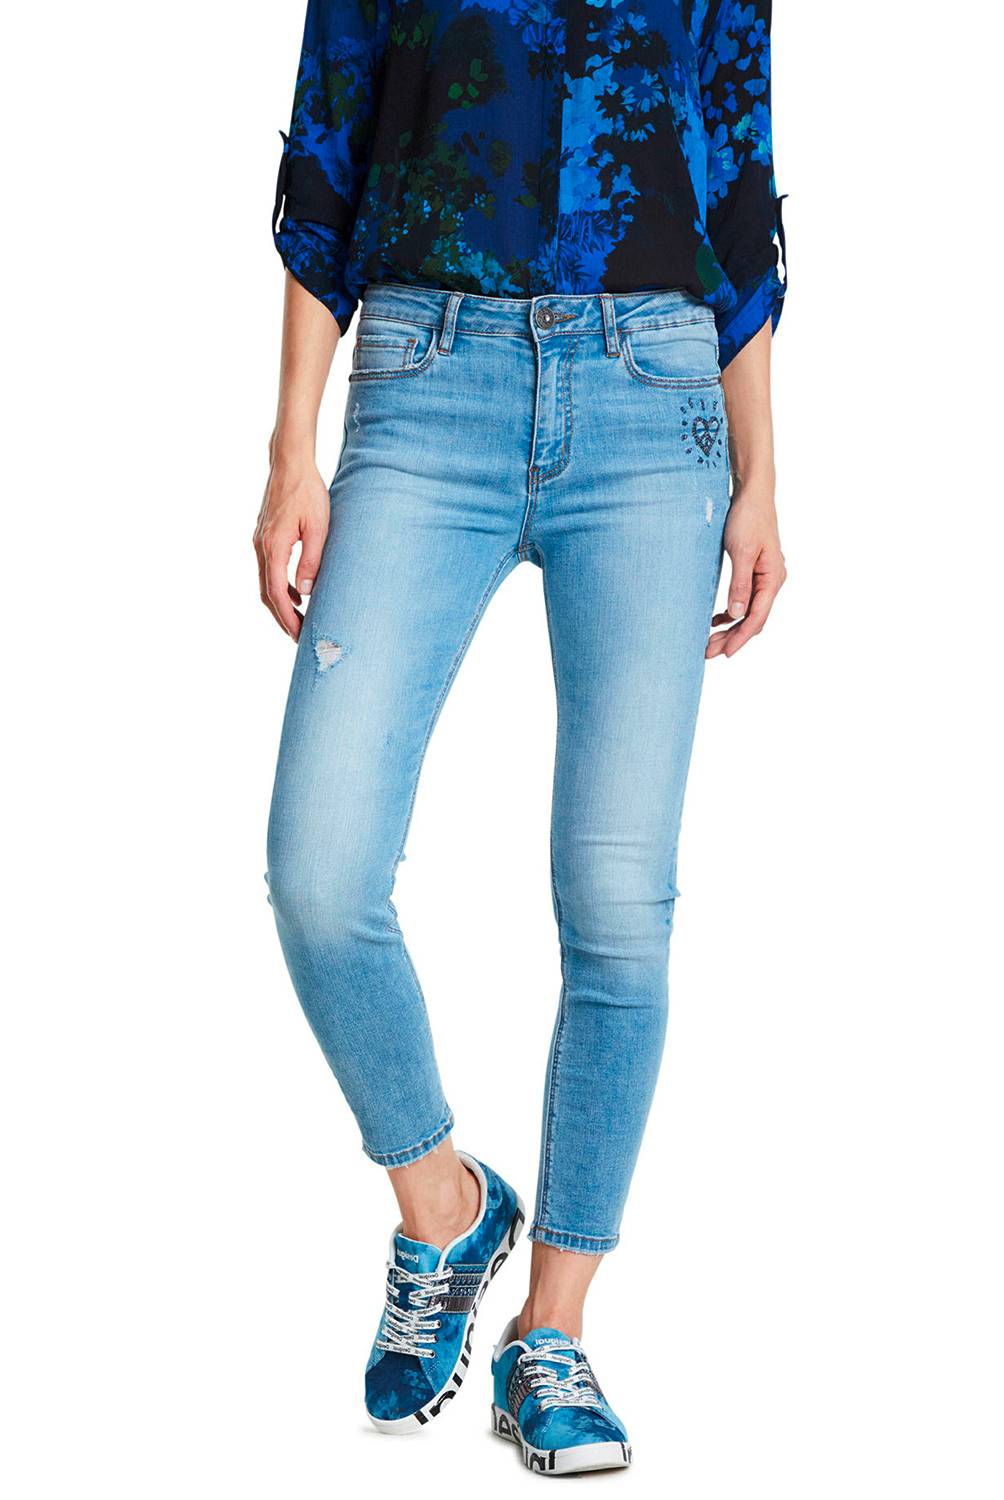 DESIGUAL - Jeans de Algodón Mujer